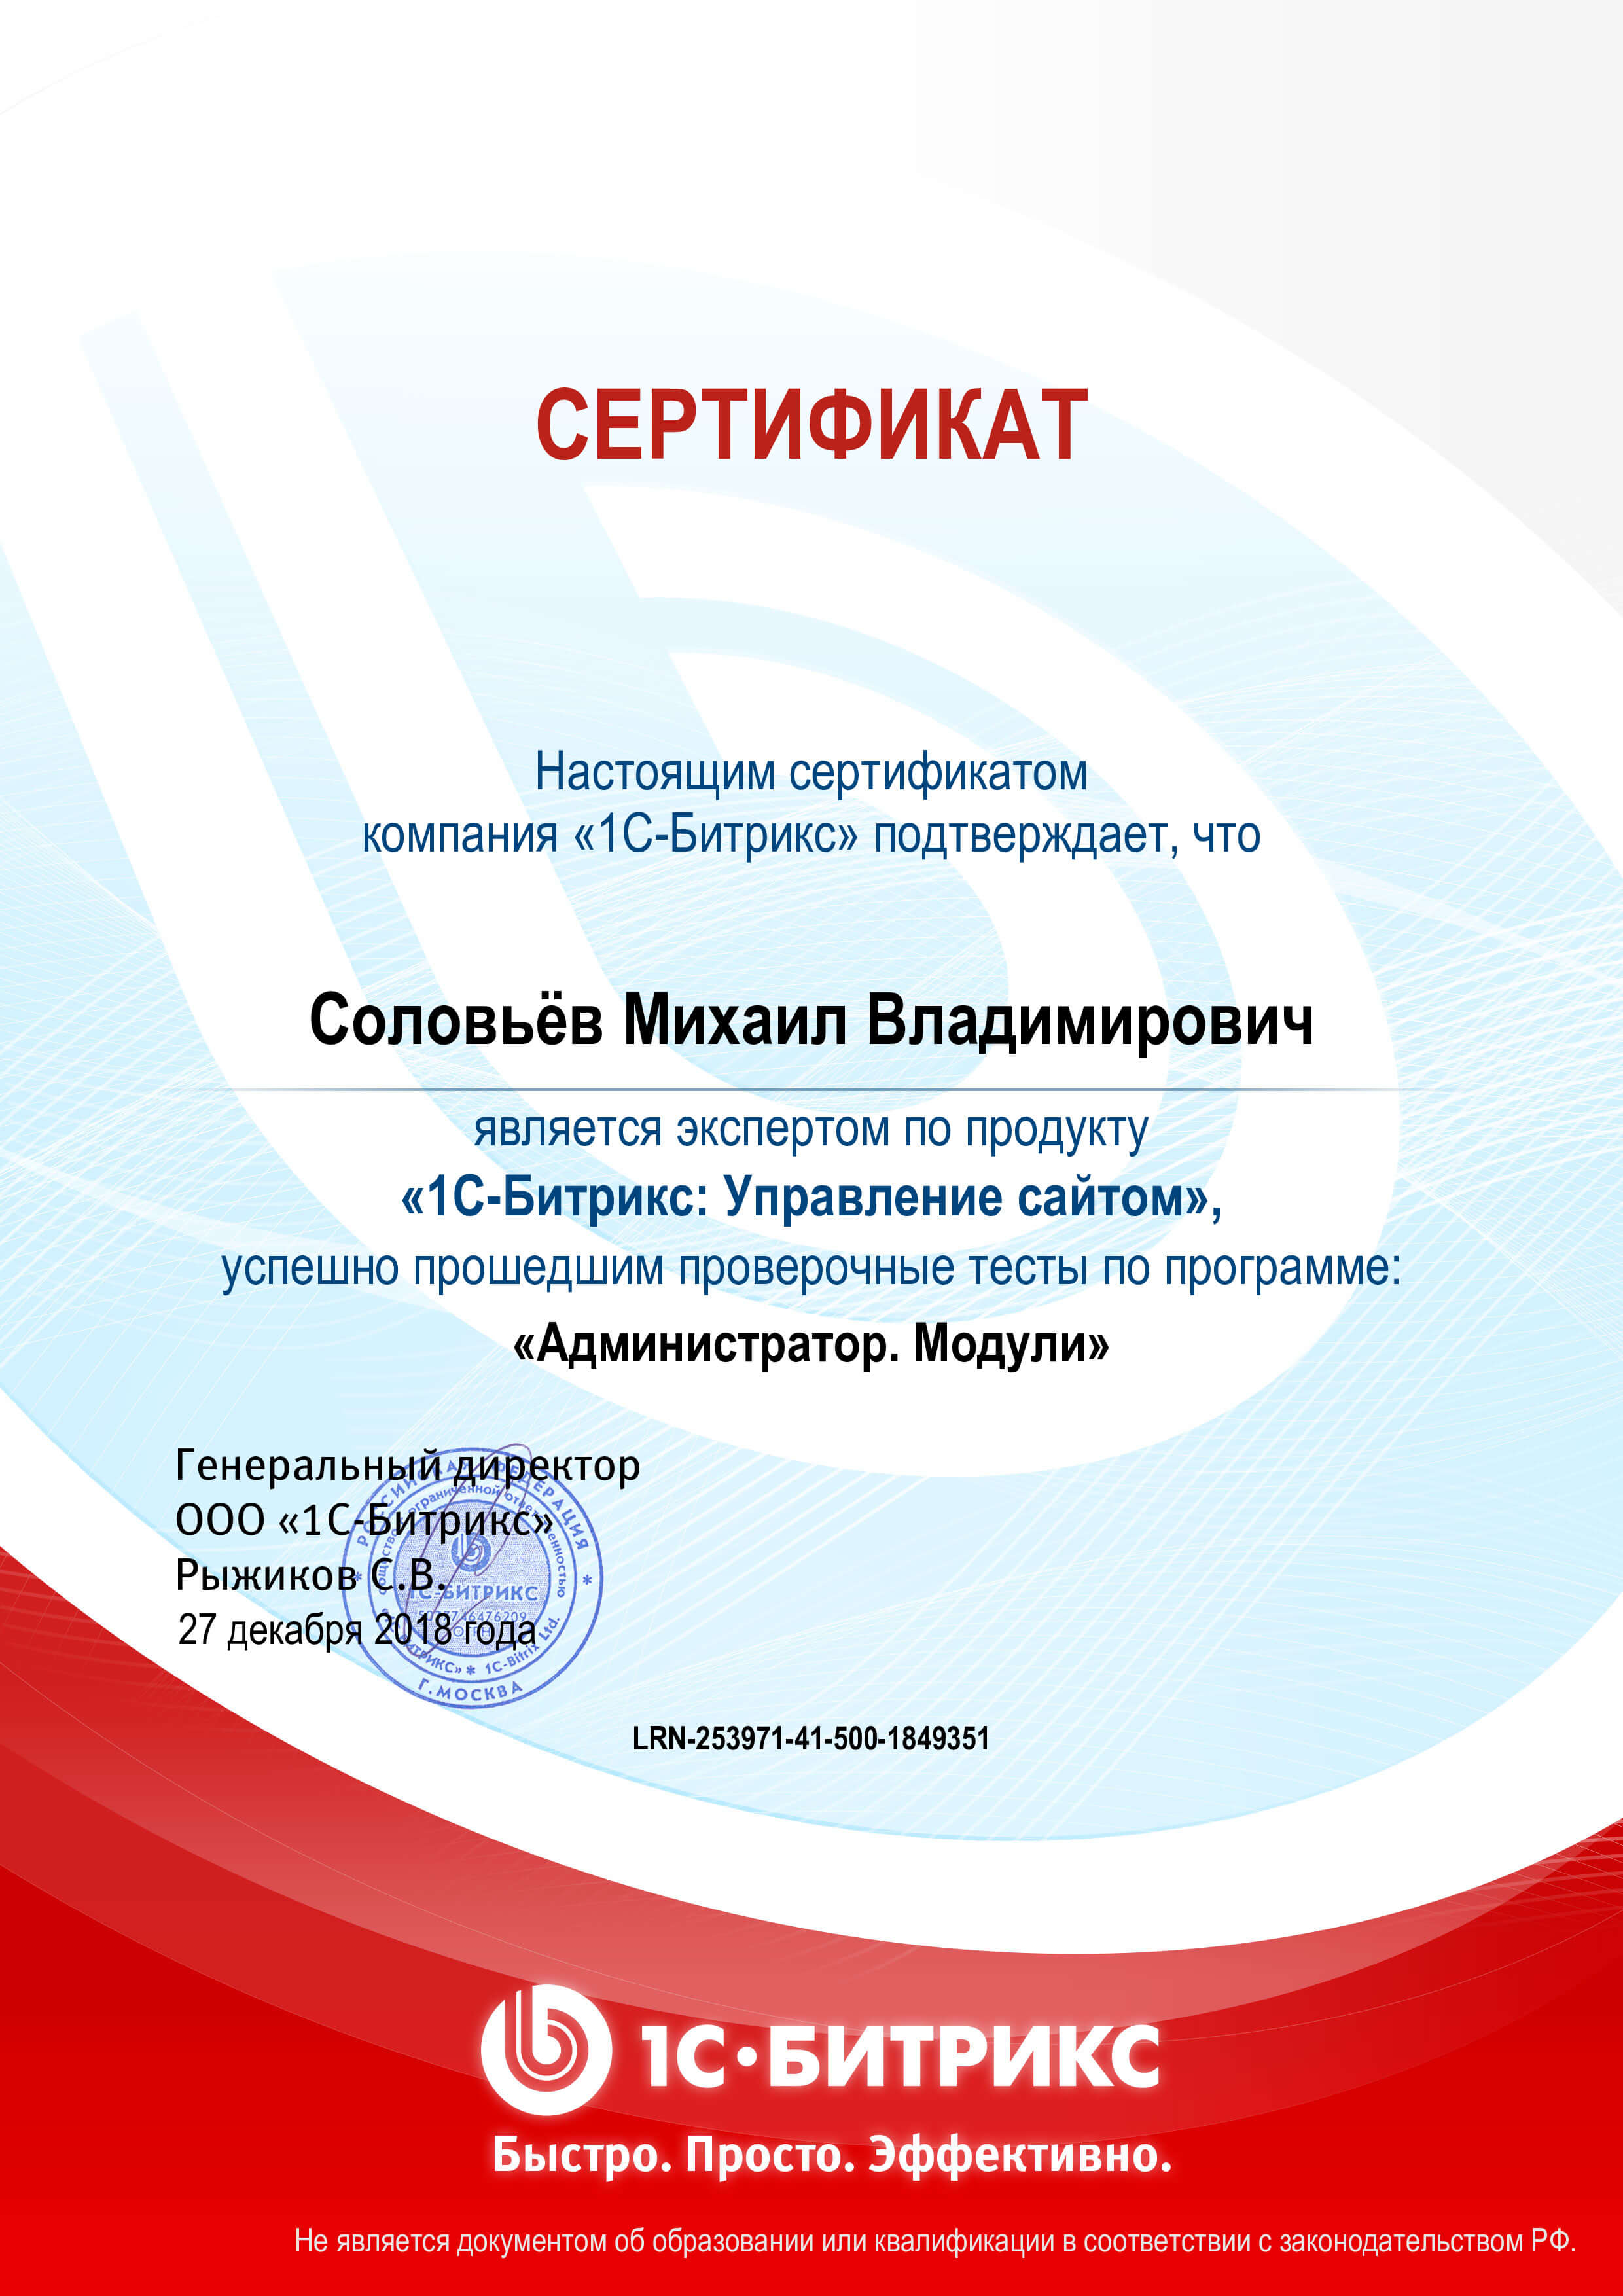 Сертификат “Администратор модули 1C-Битрикс”